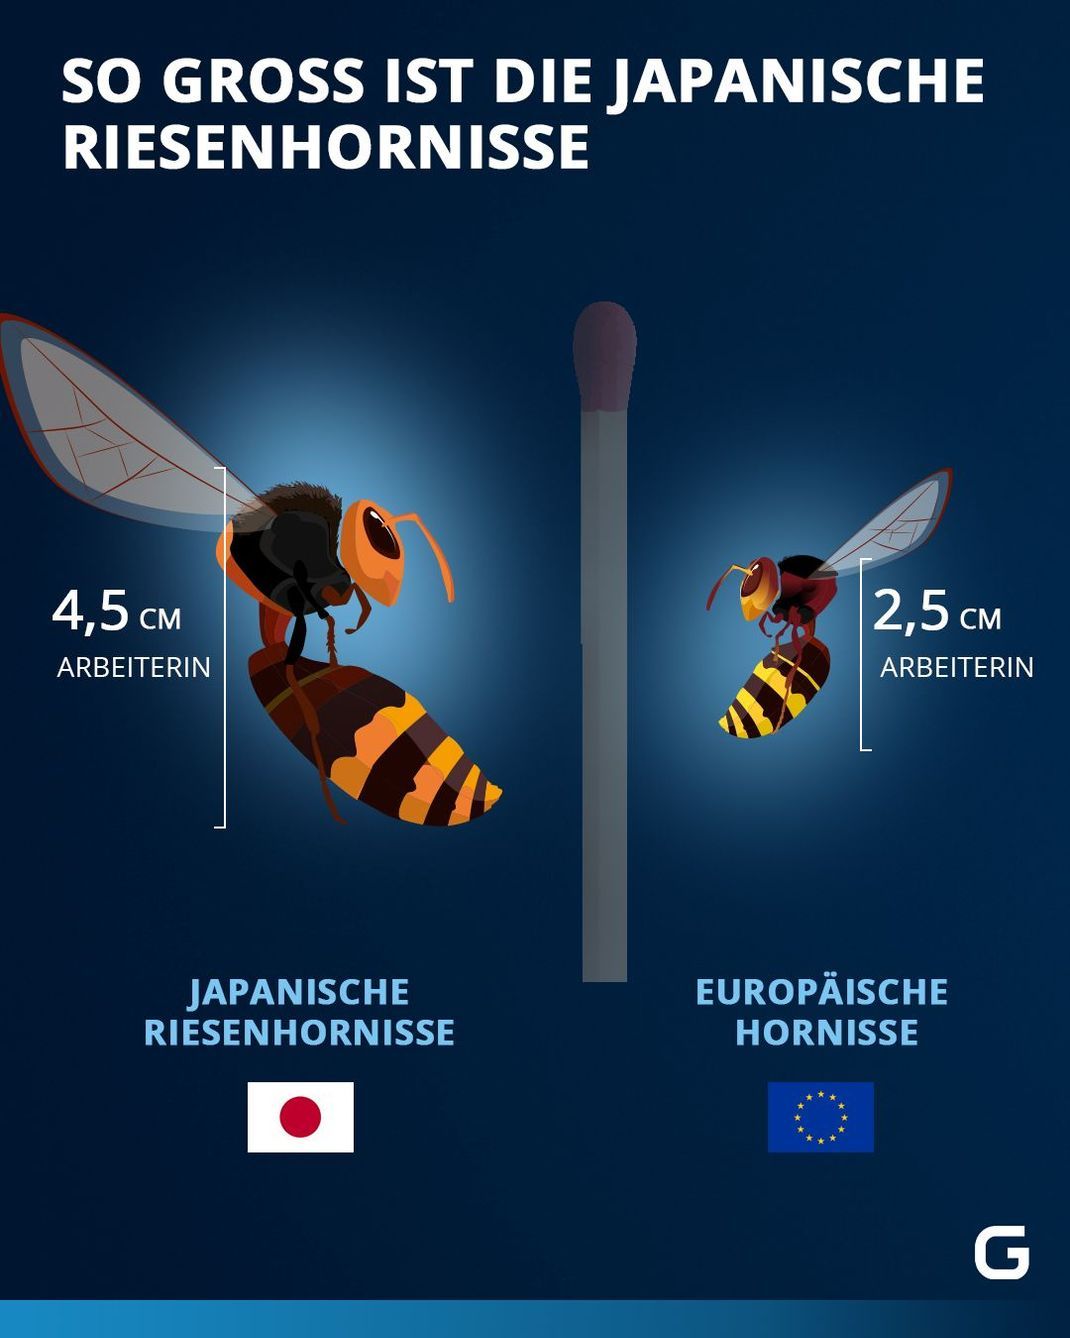 Größe der japanischen Riesenhornisse im Vergleich zur europäischen Hornisse.